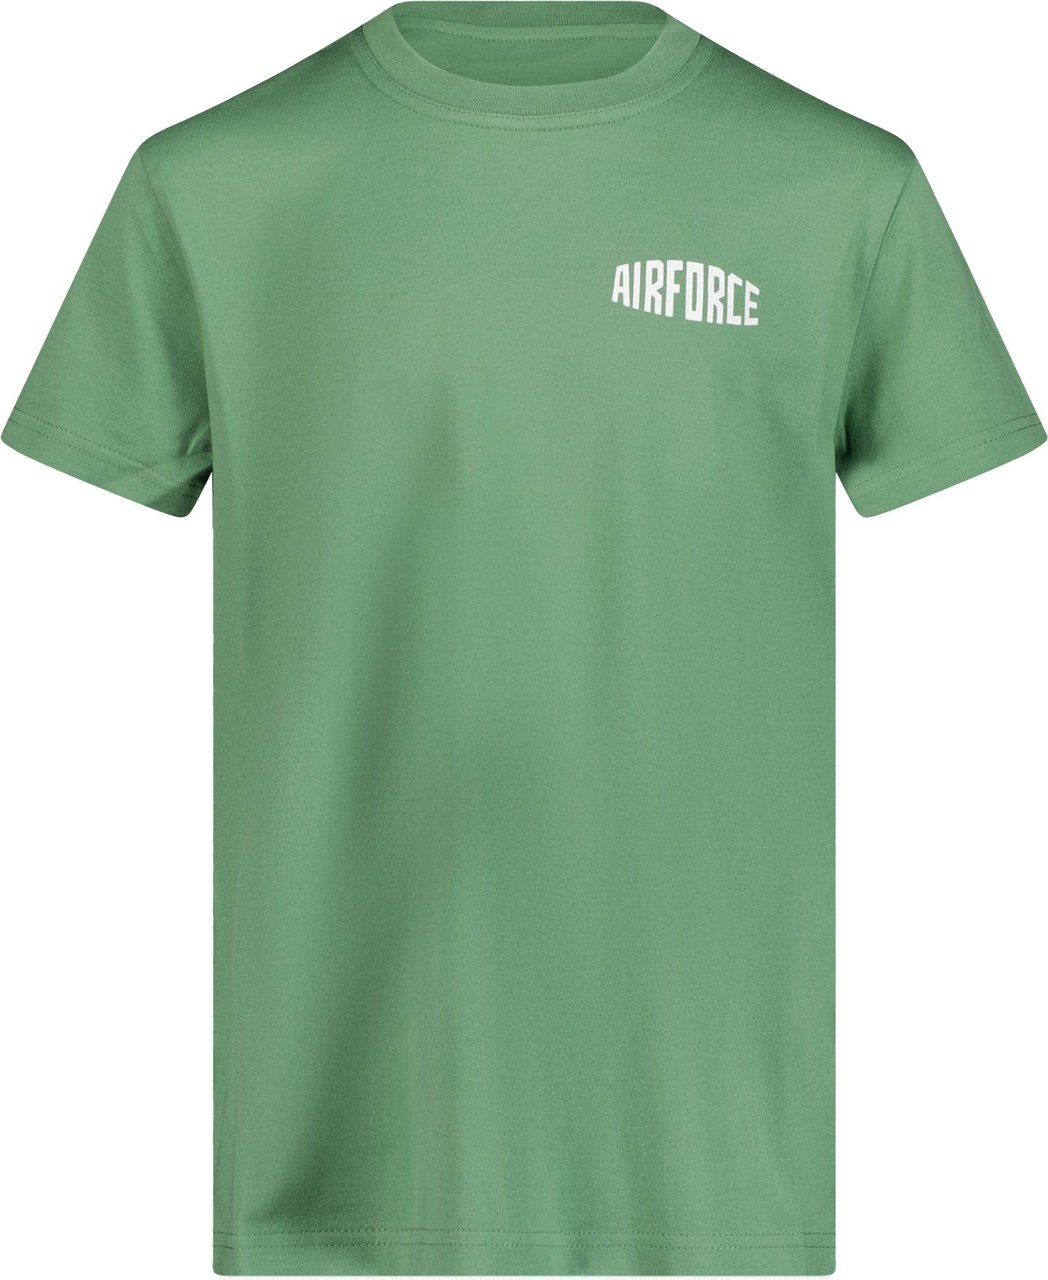 Airforce Airforce Kinder Jongens T-Shirt Olijf Groen Groen